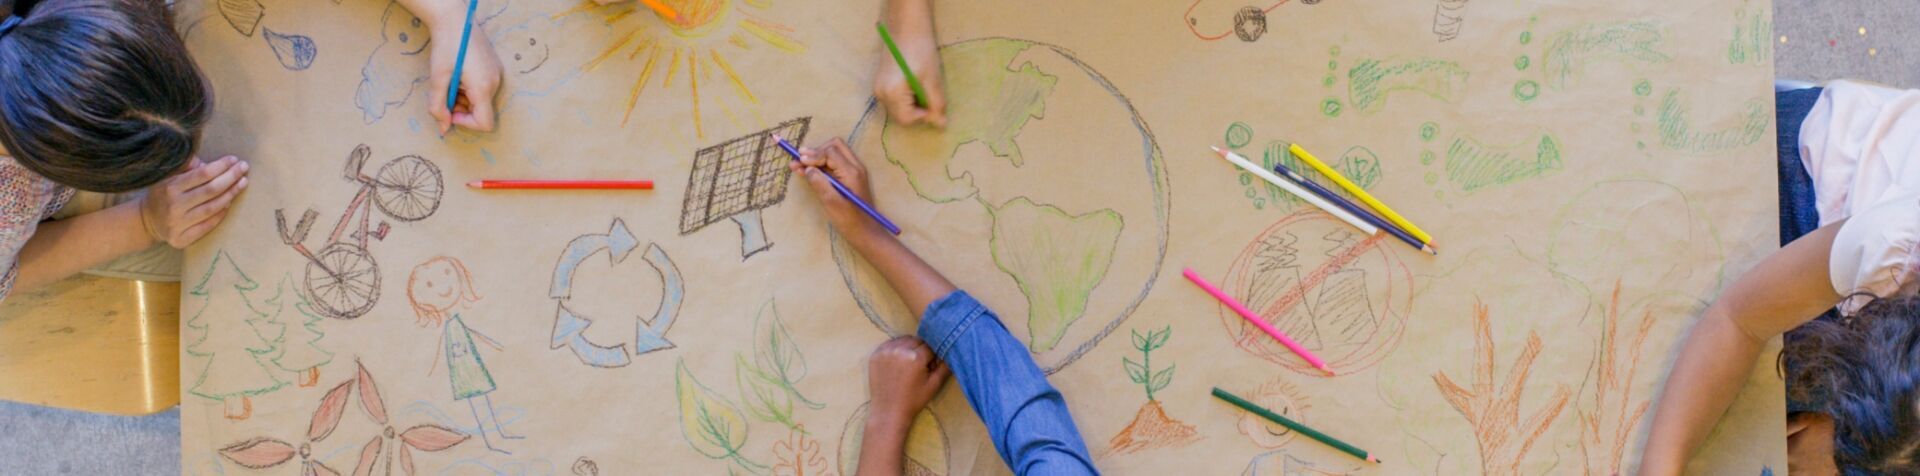 커다란 종이 위에 색연필로 지구, 태양열 발전 등 환경과 관련된 그림을 그리고 있는 아이들의 손을 위에서 바라본 이미지입니다.